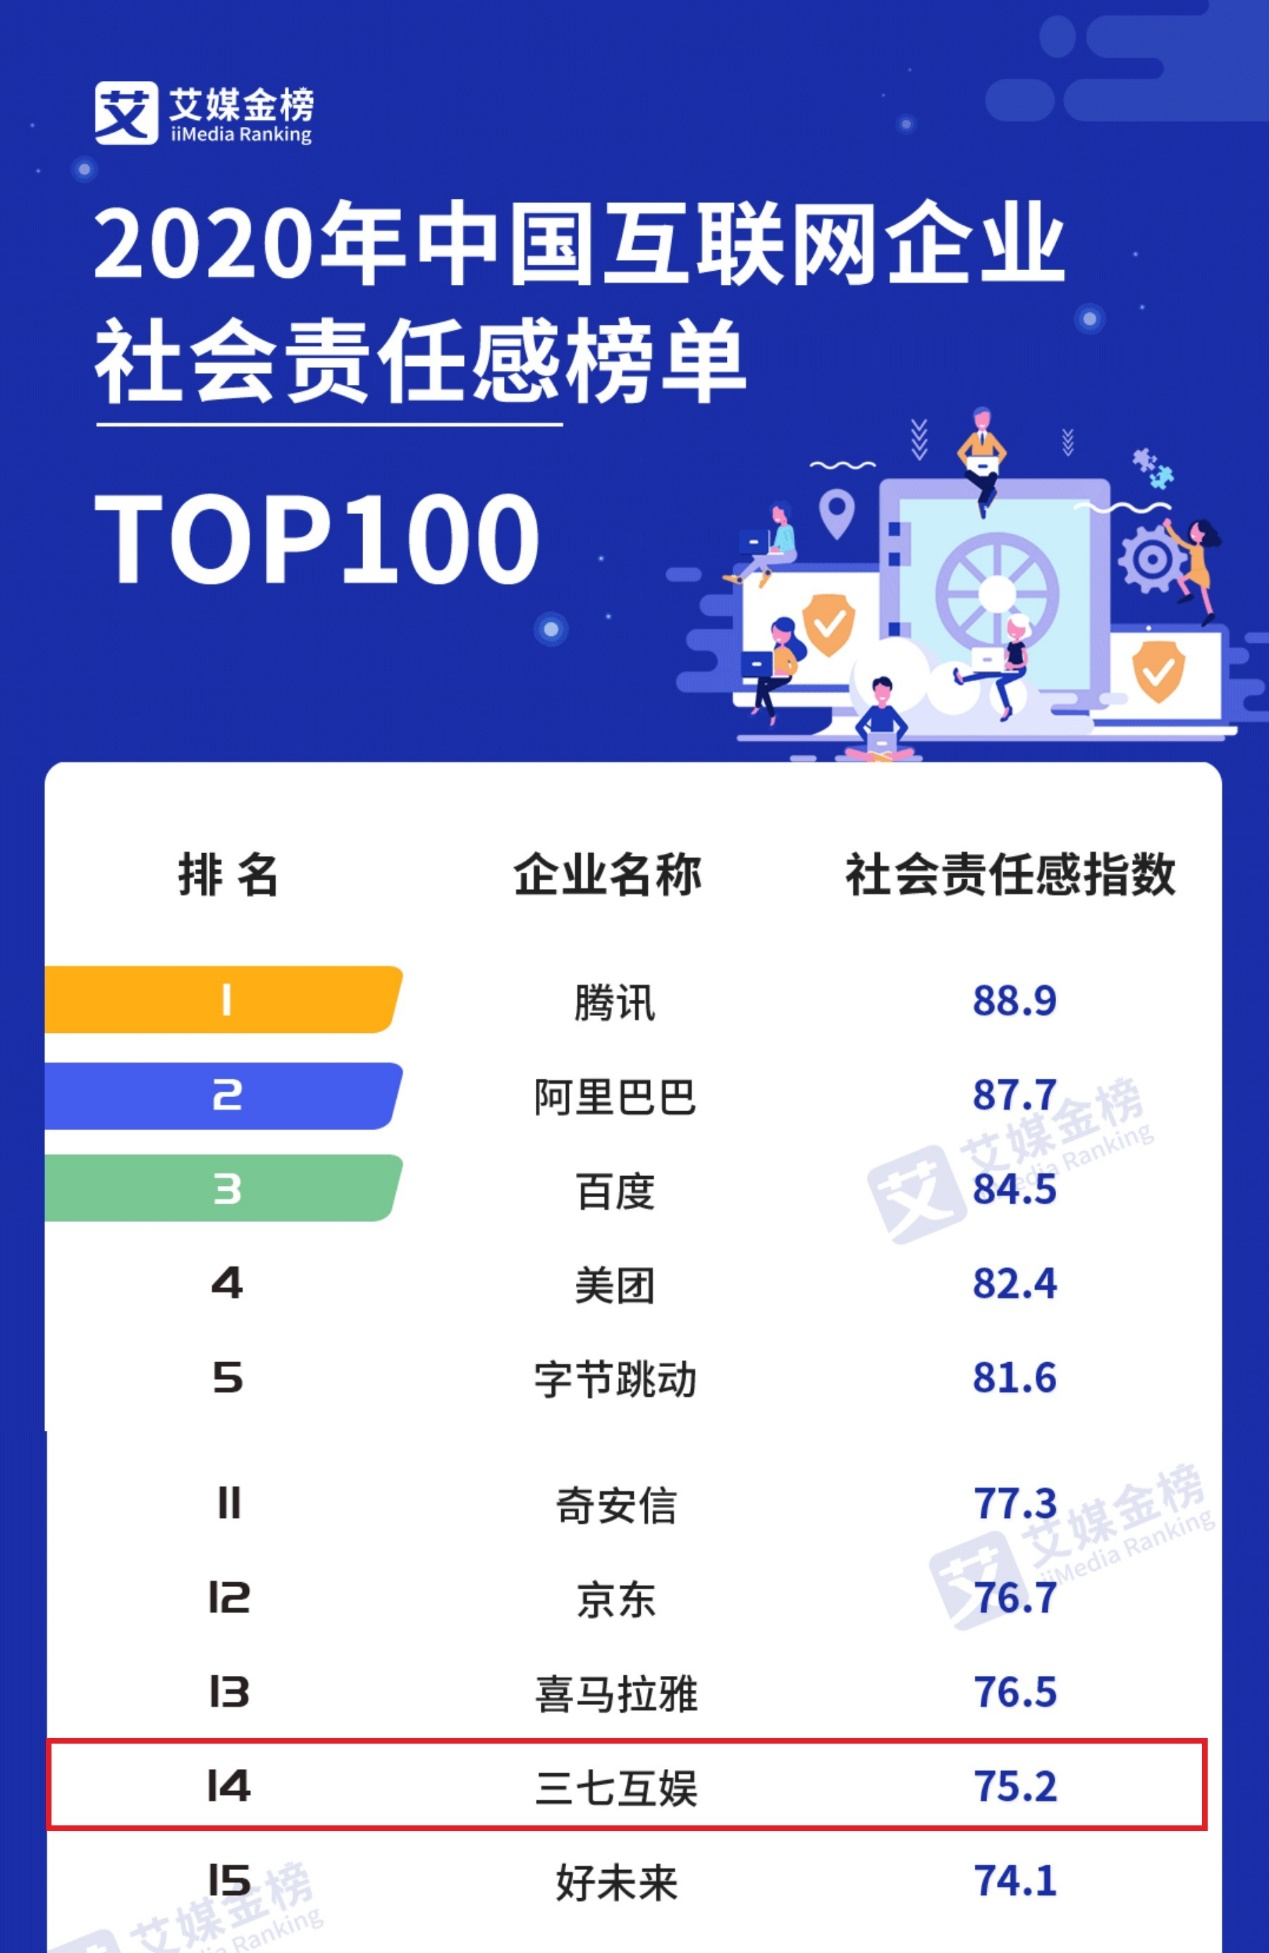 公益、创新工作受认可  三七互娱进入中国互联网企业社会责任感榜TOP20攻略